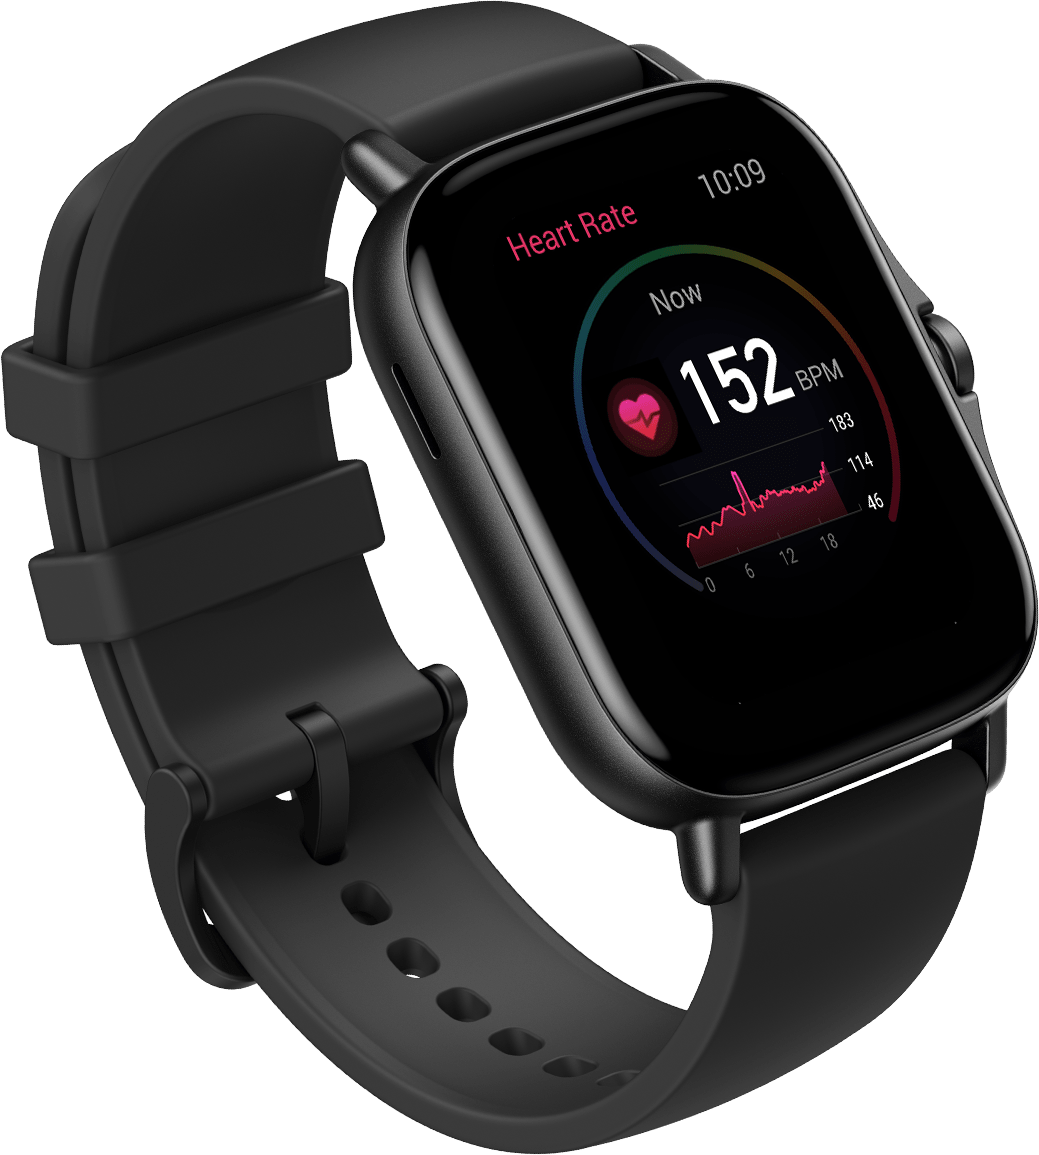 Amazfit GTS Fitness - Reloj inteligente con monitor de frecuencia cardíaca,  batería duración de 14 días, control de música, pantalla de 1.65”, monitor